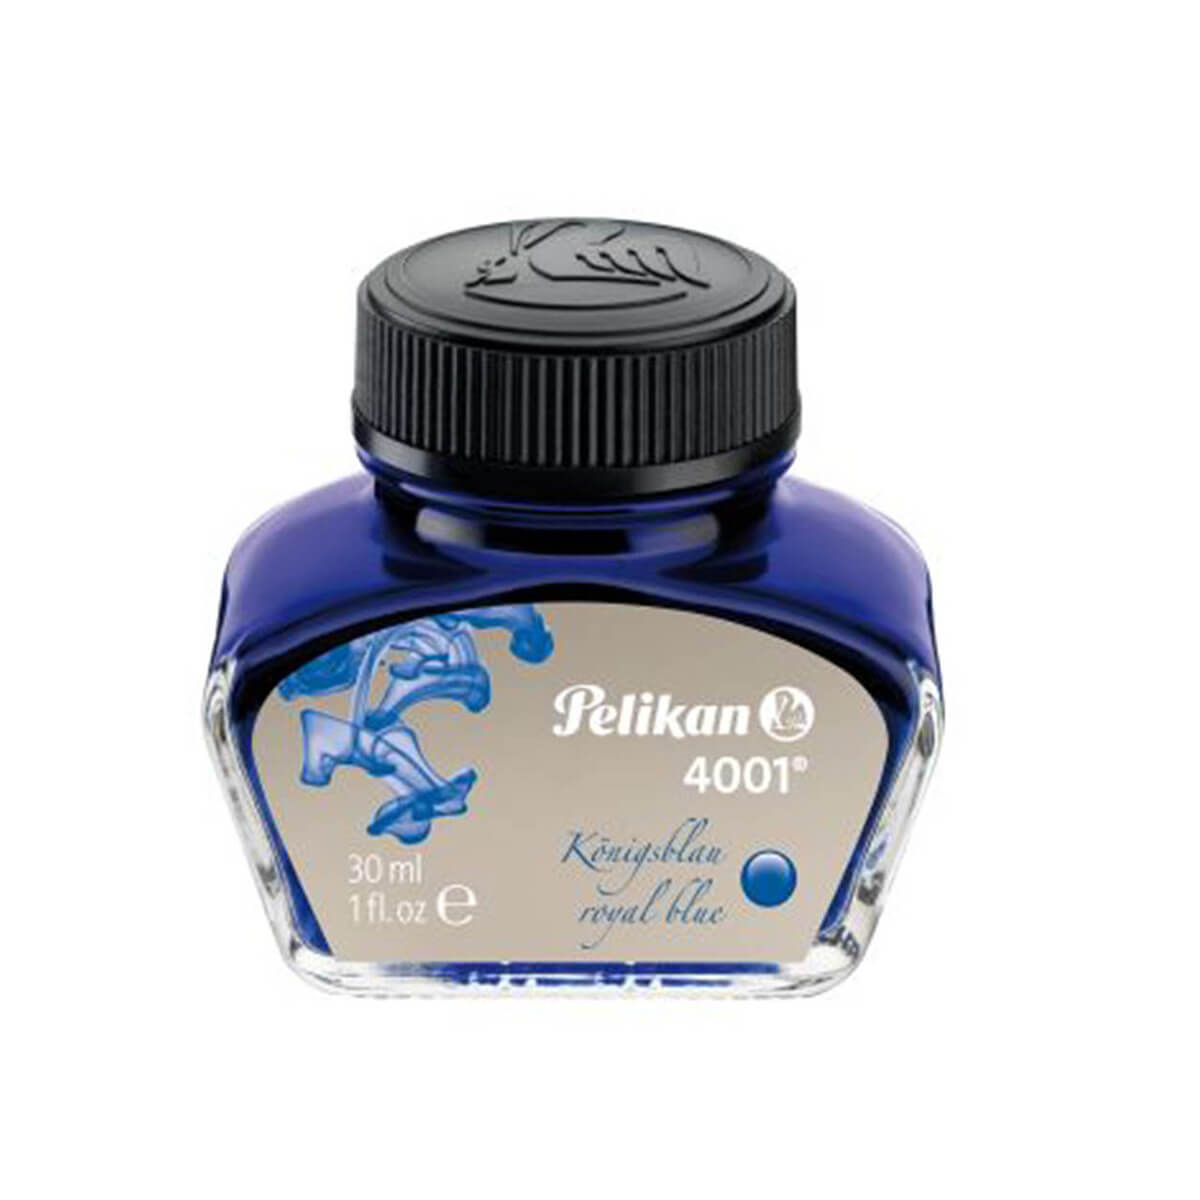 Pelikan Tinte 4001 Königsblau im 30ml Glas